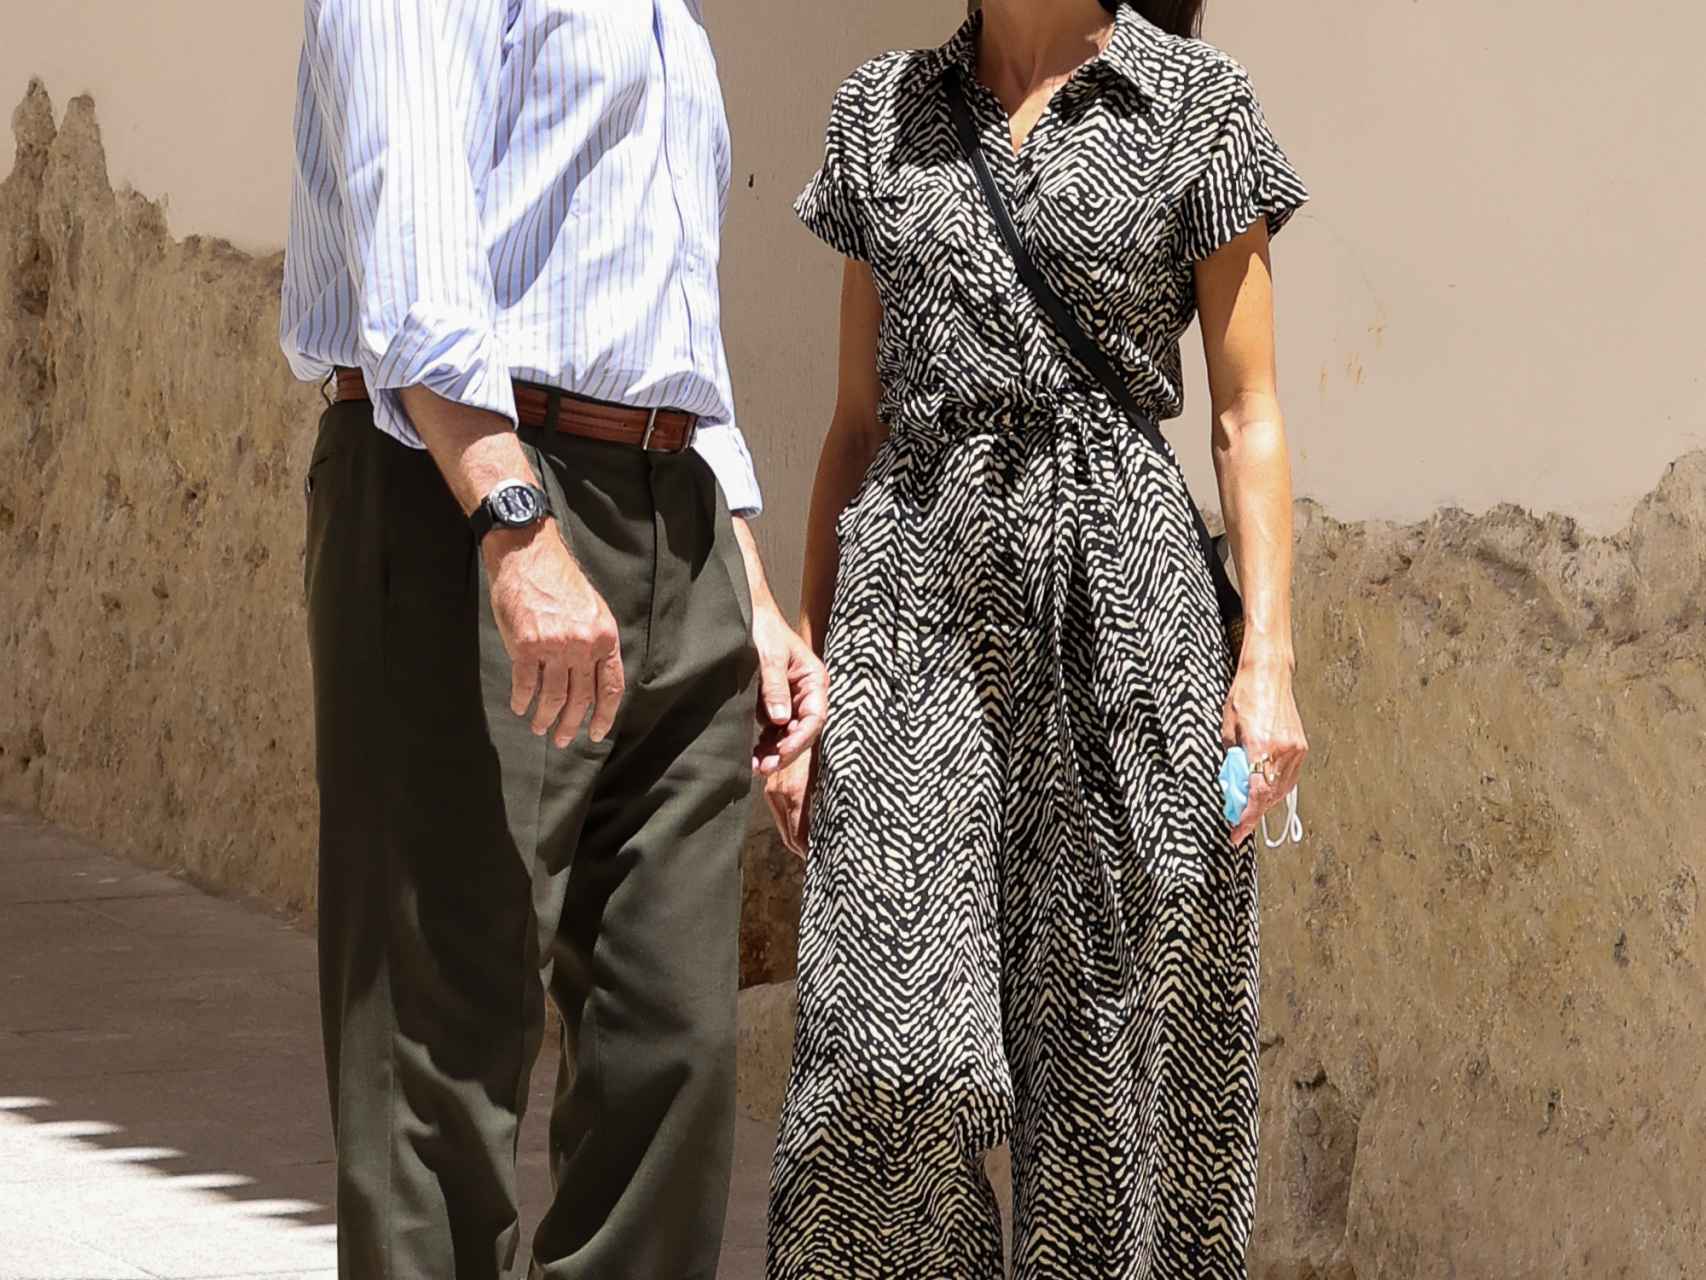 Letizia y Felipe caminando por las calles de Cuenca 16 años después.